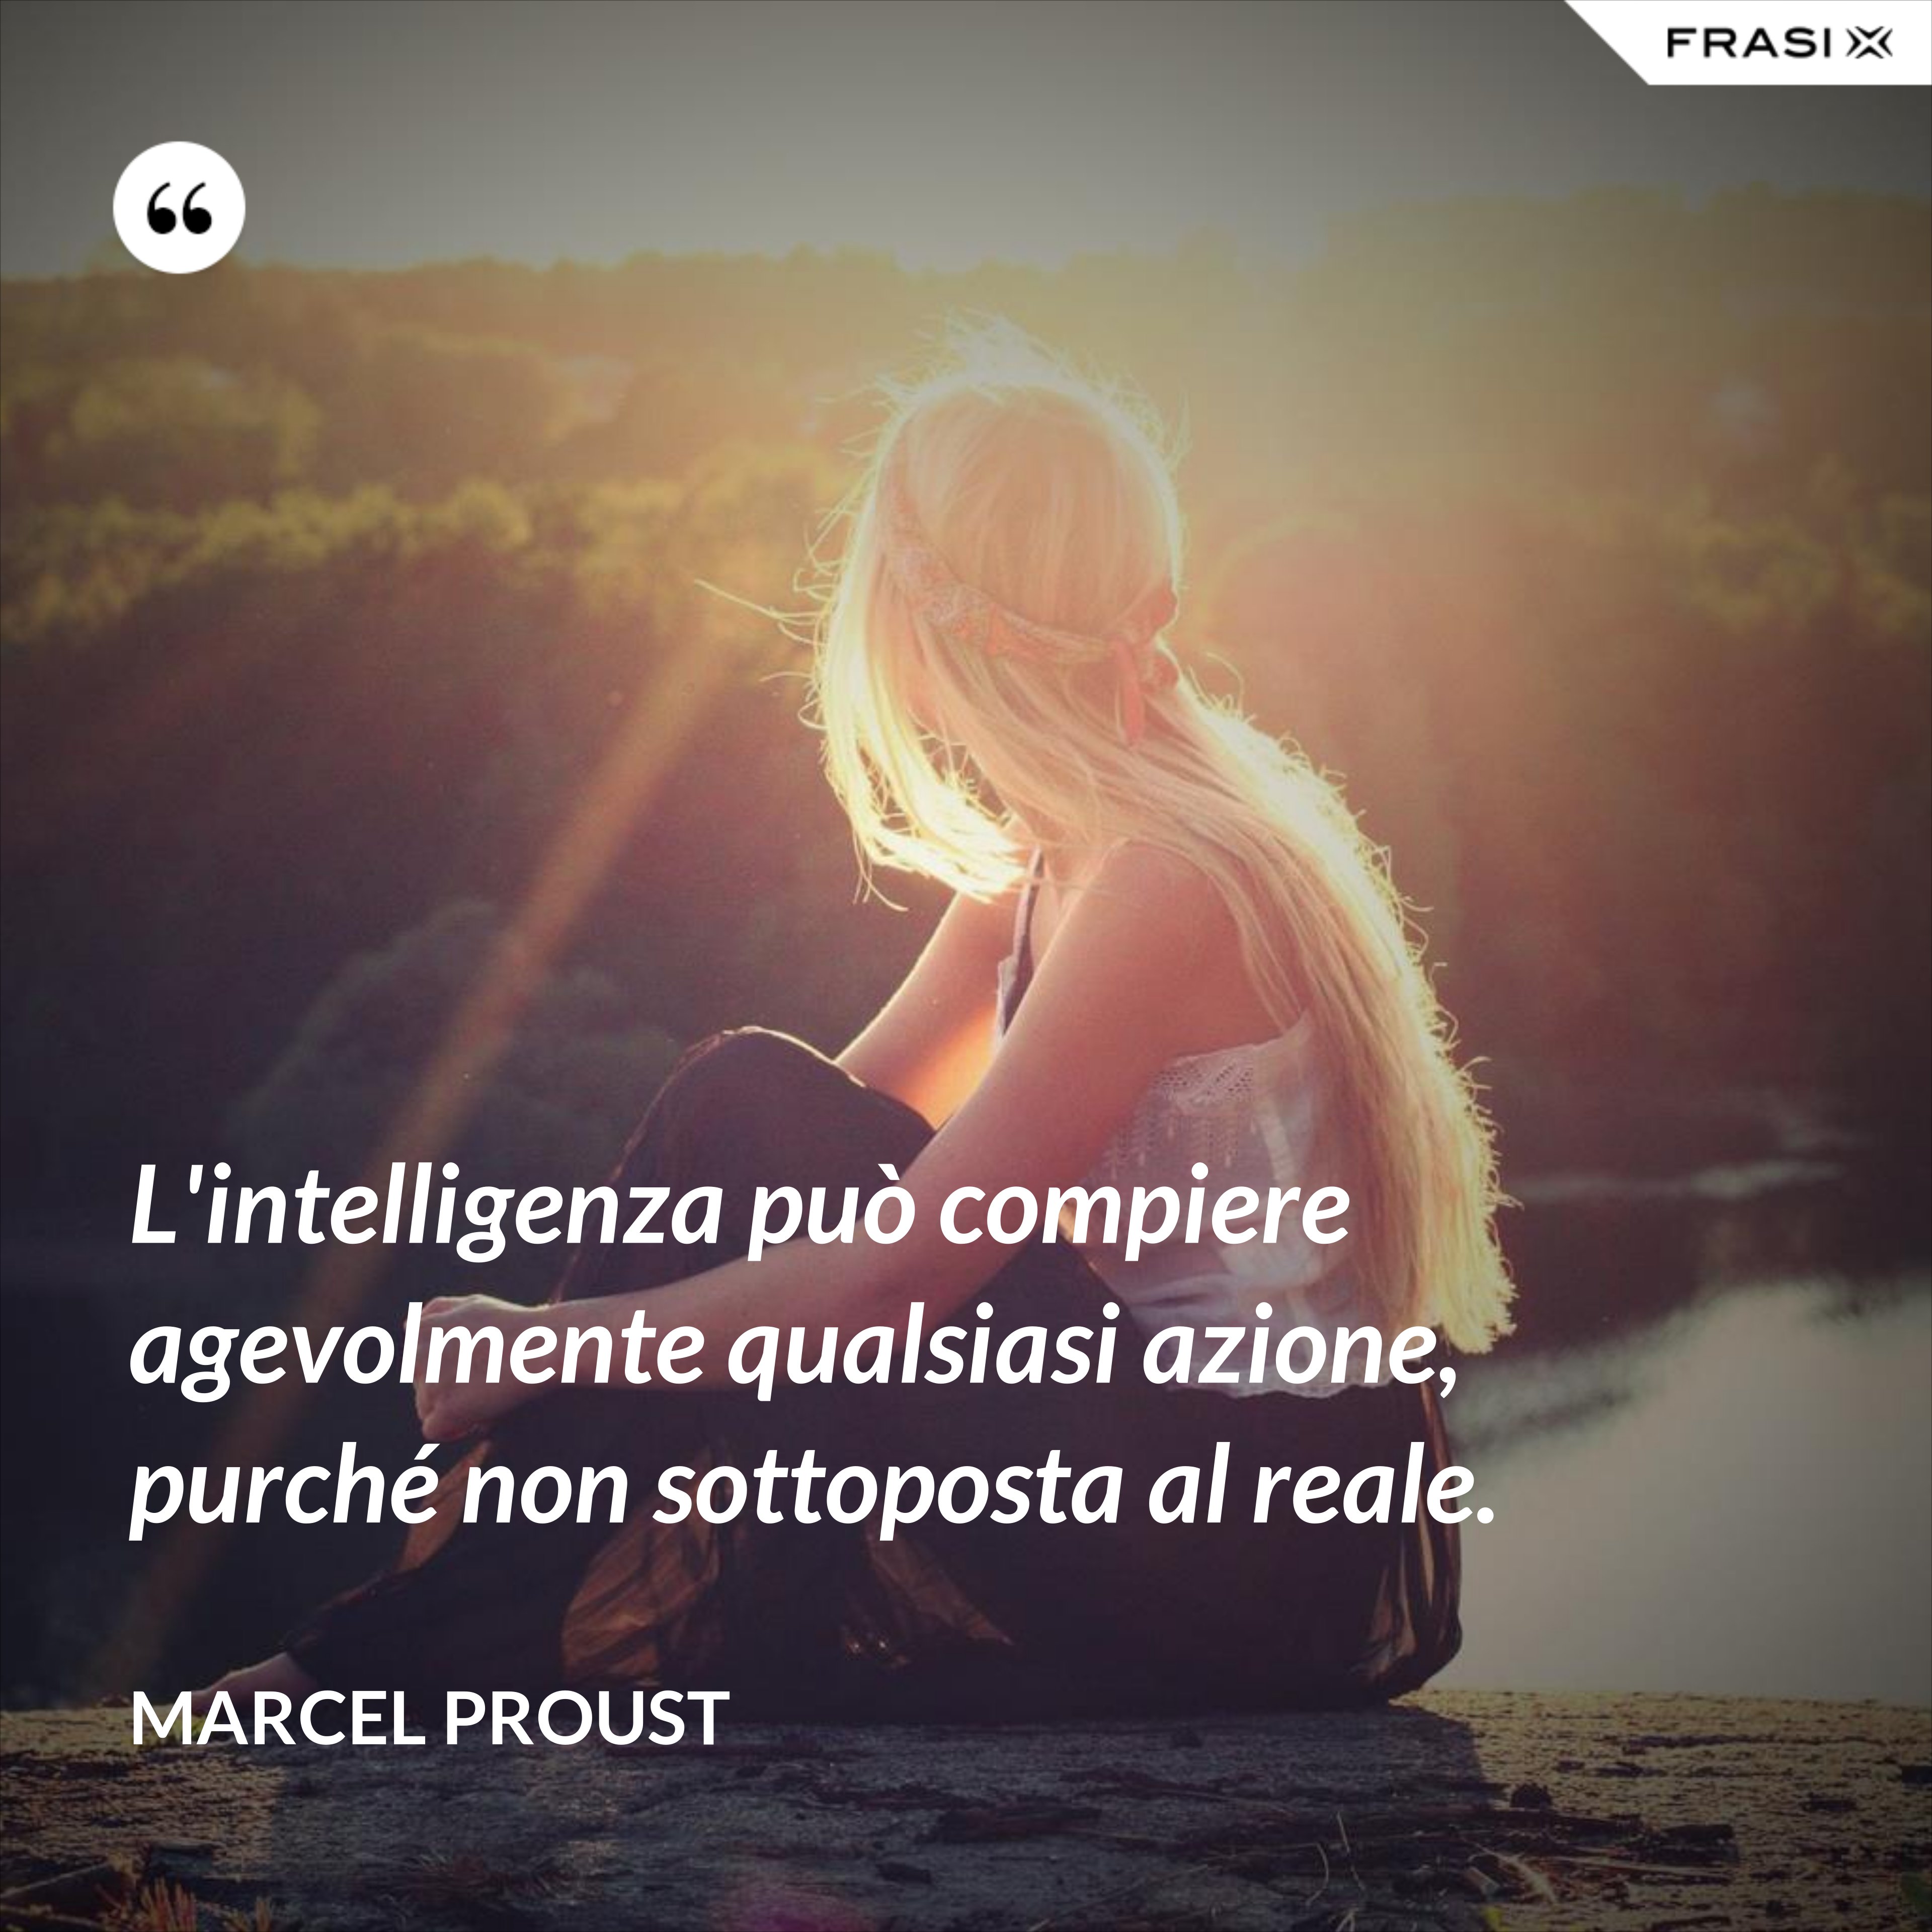 L'intelligenza può compiere agevolmente qualsiasi azione, purché non sottoposta al reale. - Marcel Proust